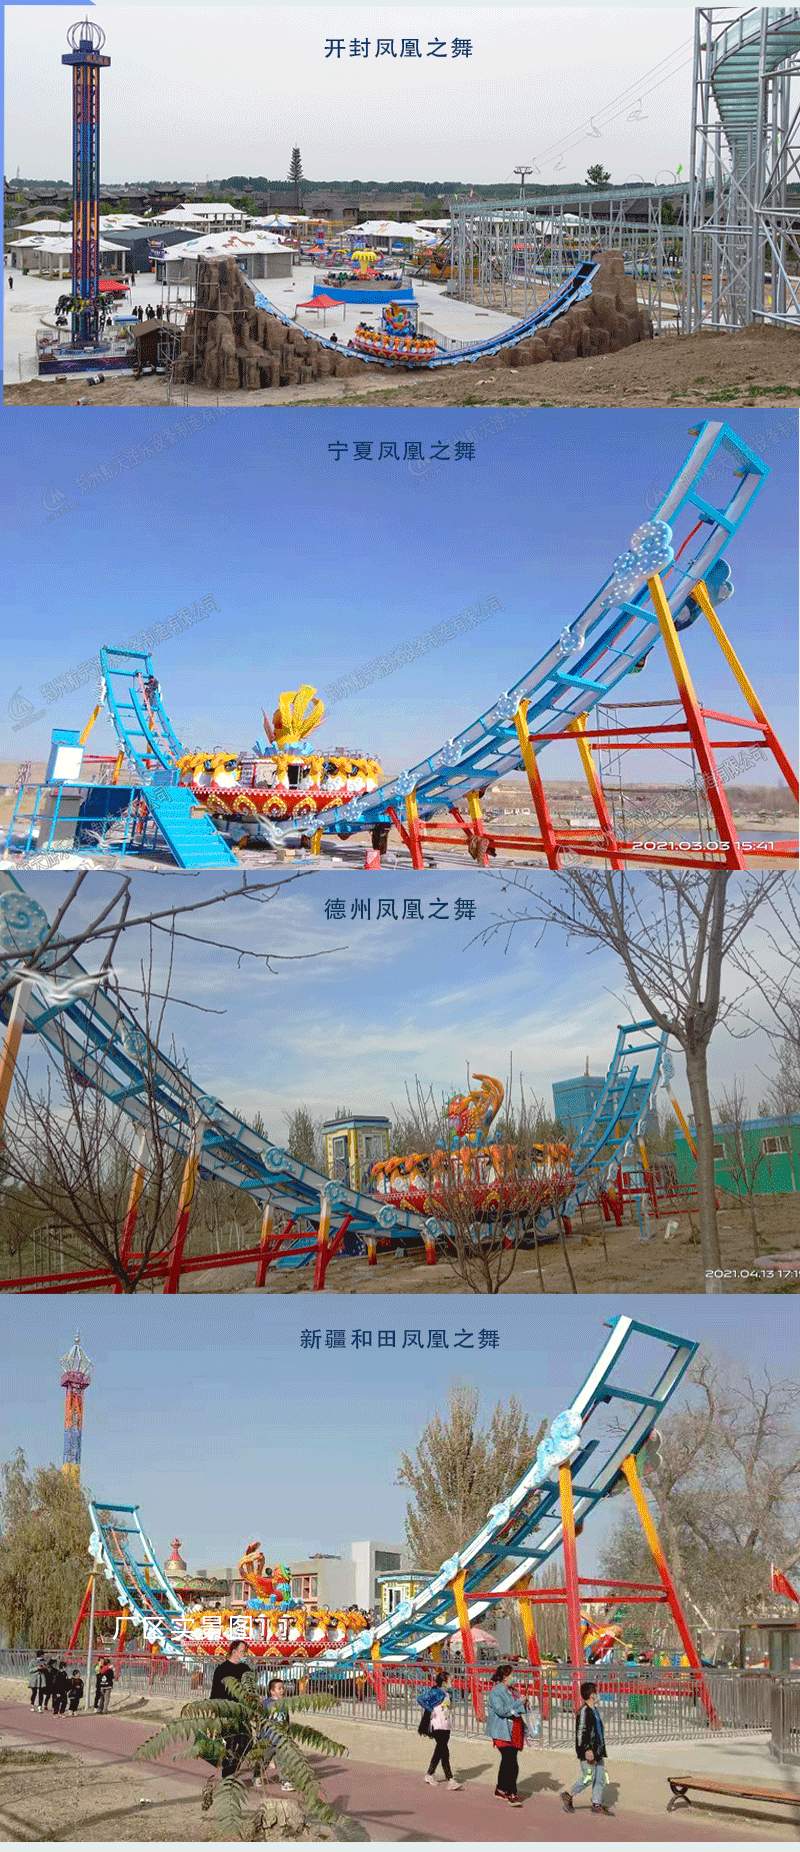 郑州新型大型轨道飞碟游乐设施航天游乐价格 4